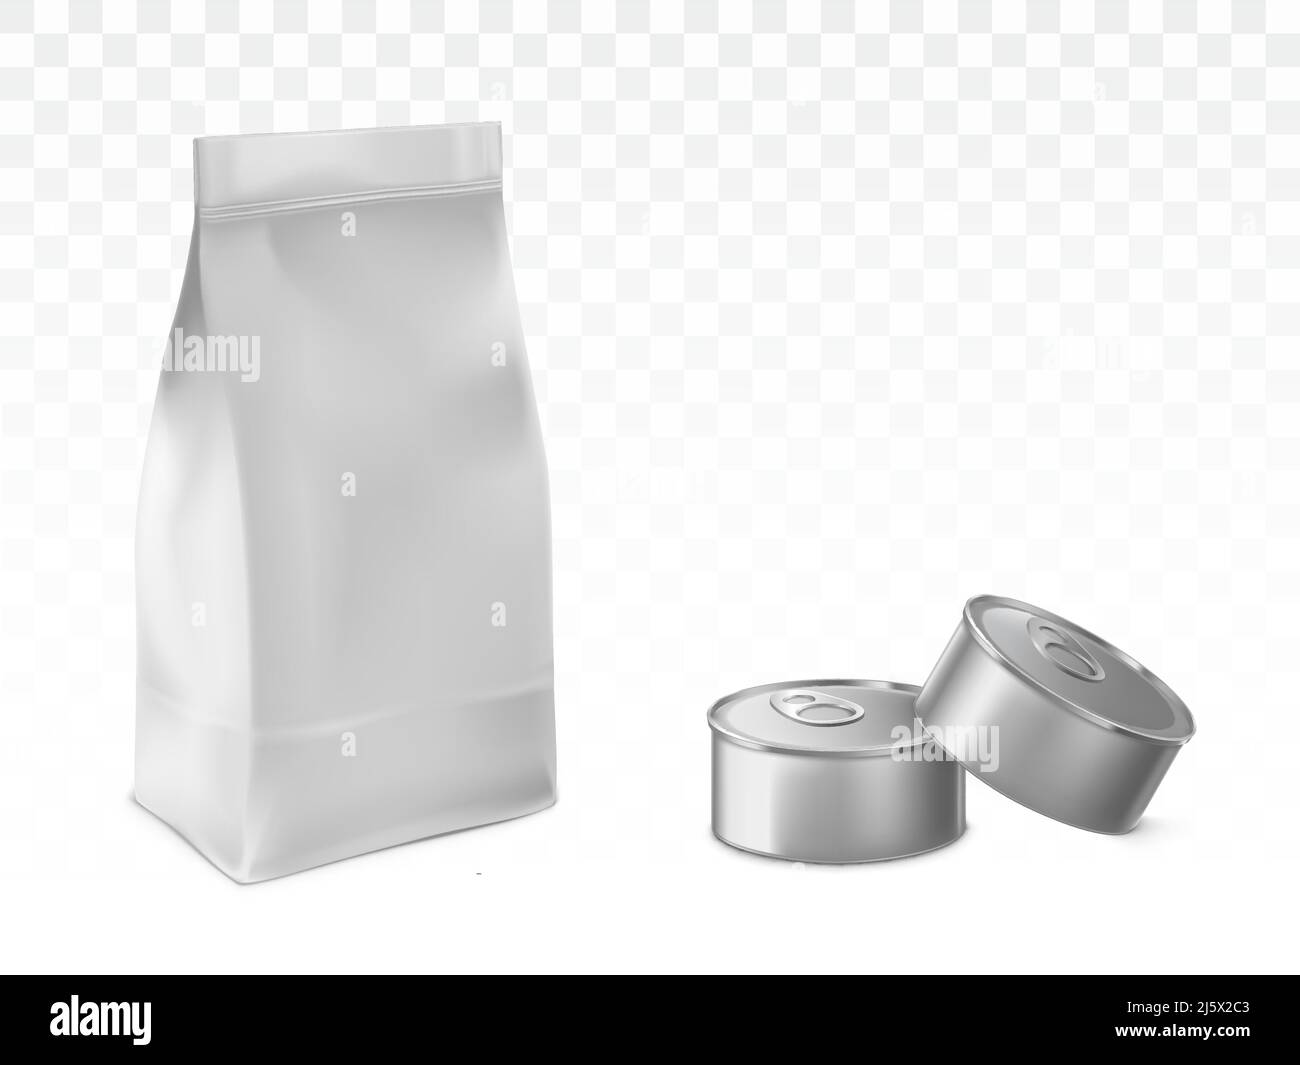 Sacchetto di carta o di alluminio, sacchetto di plastica sigillato e fustellato, lattine di metallo 3D illustrazioni vettoriali realistiche isolate su sfondo bianco trasparente con sha Illustrazione Vettoriale